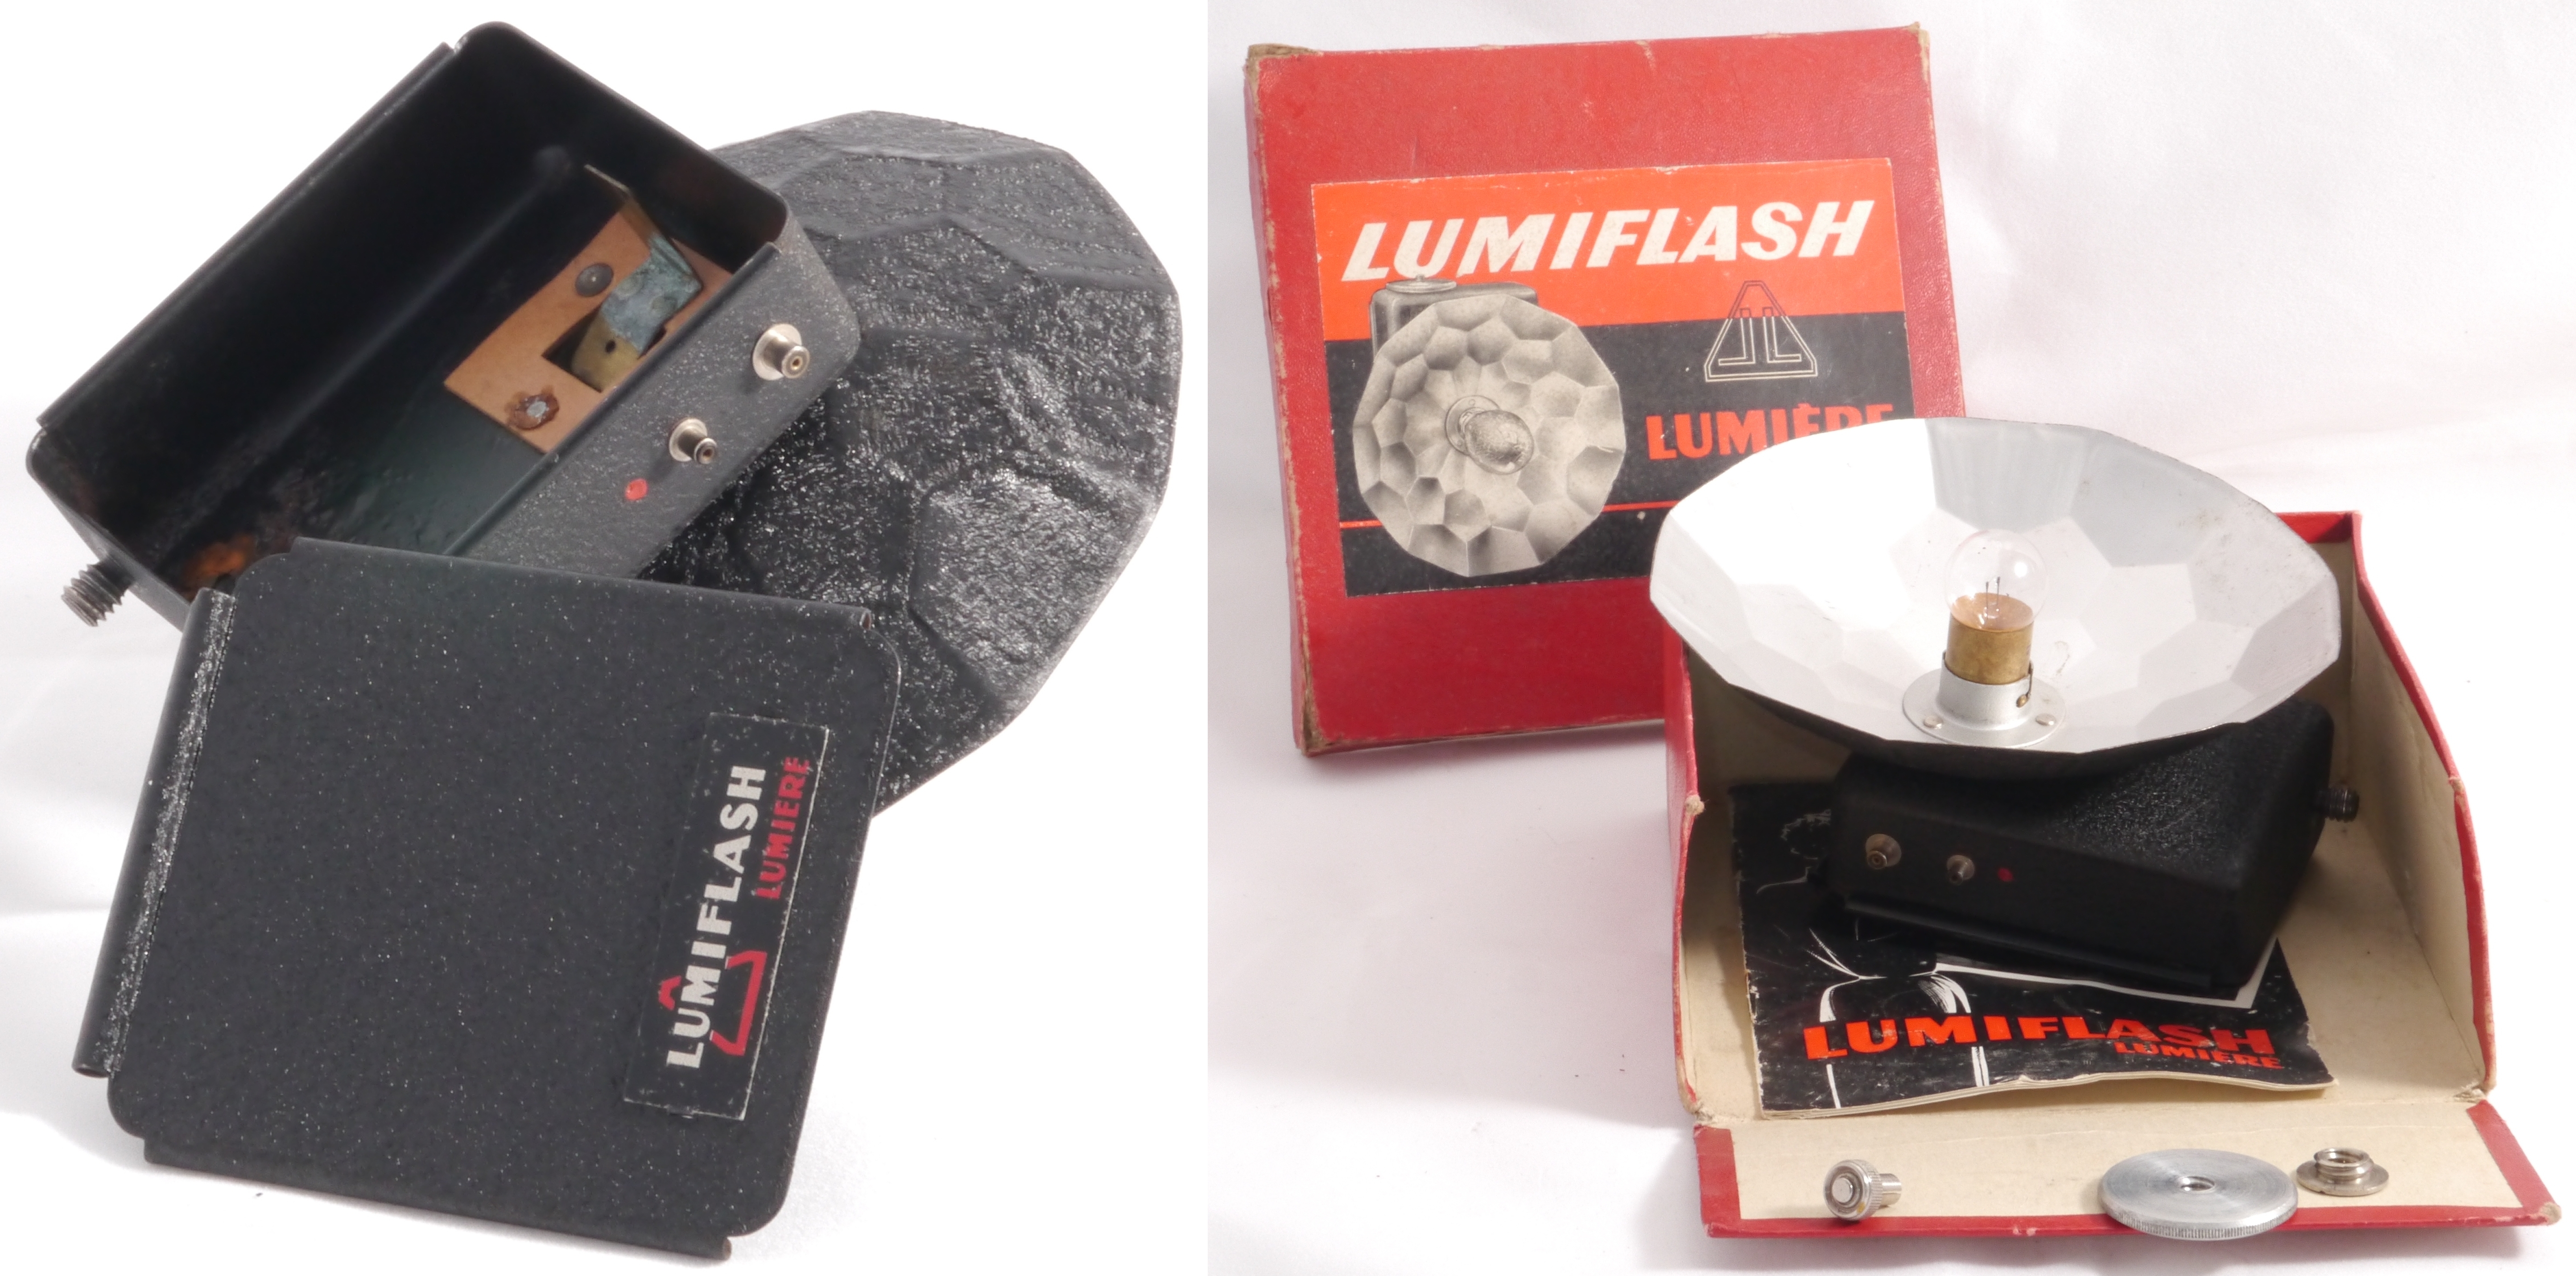 Lumiflash sans condenseur, diamètre de la corolle : 12,0 cm